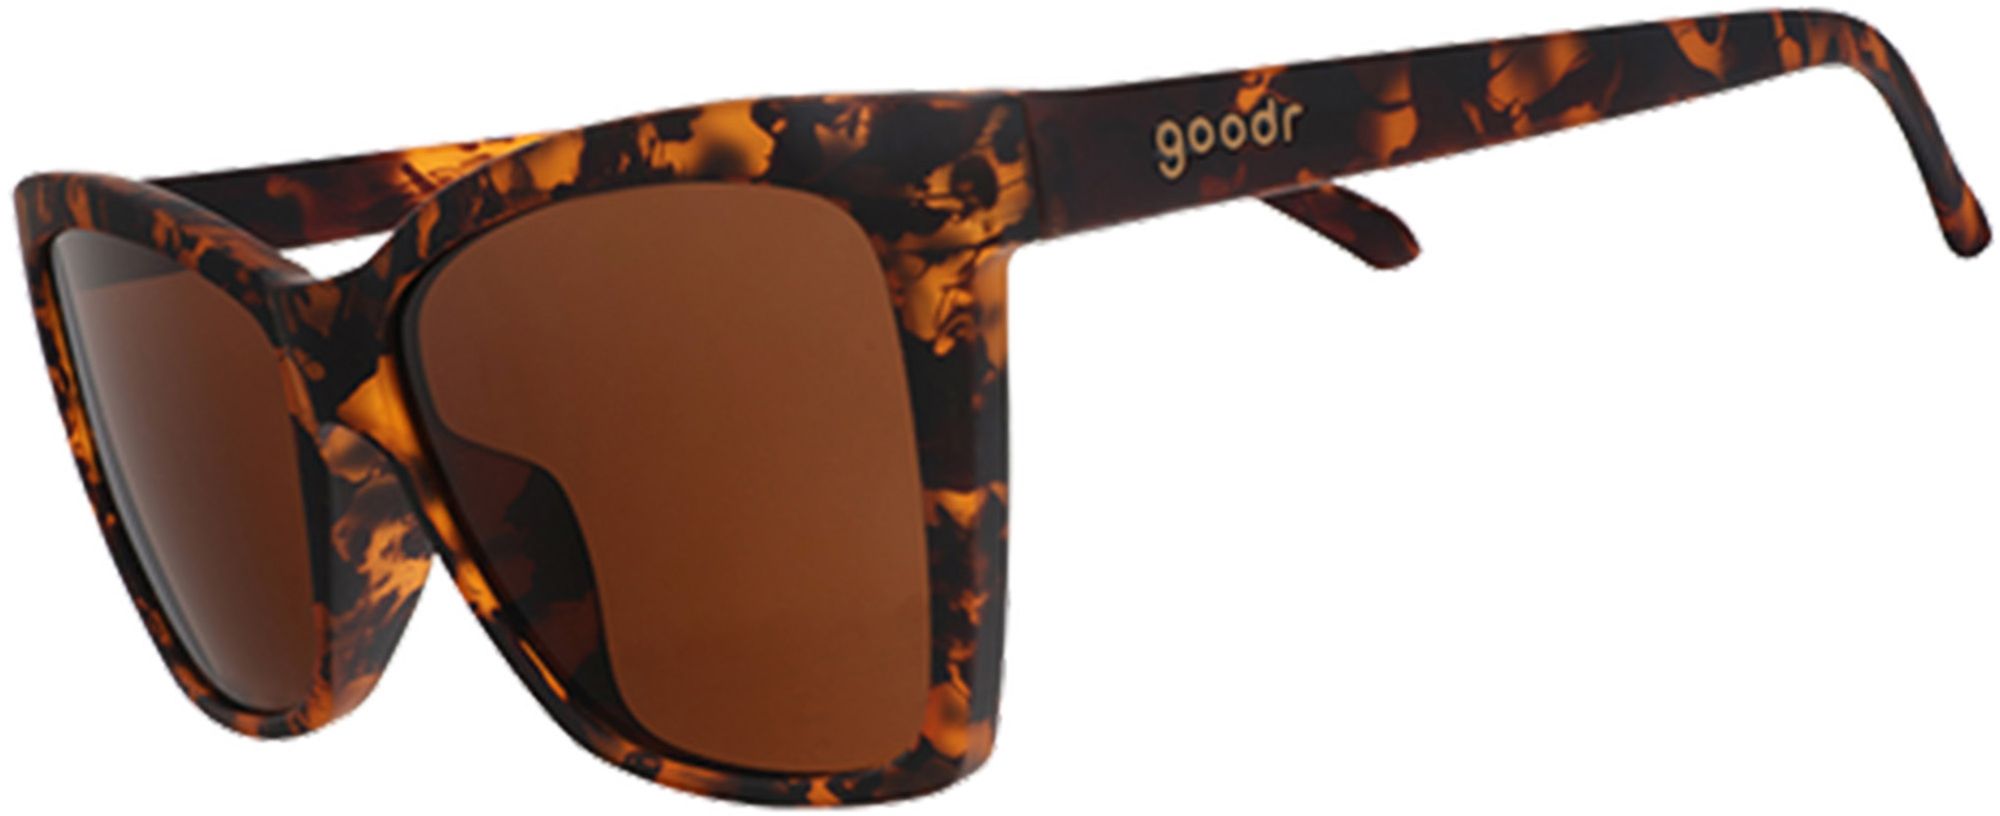 Photos - Sunglasses Goodr Unisex Vanguard Visionary Polarized , Men's, Tortoise 24AV